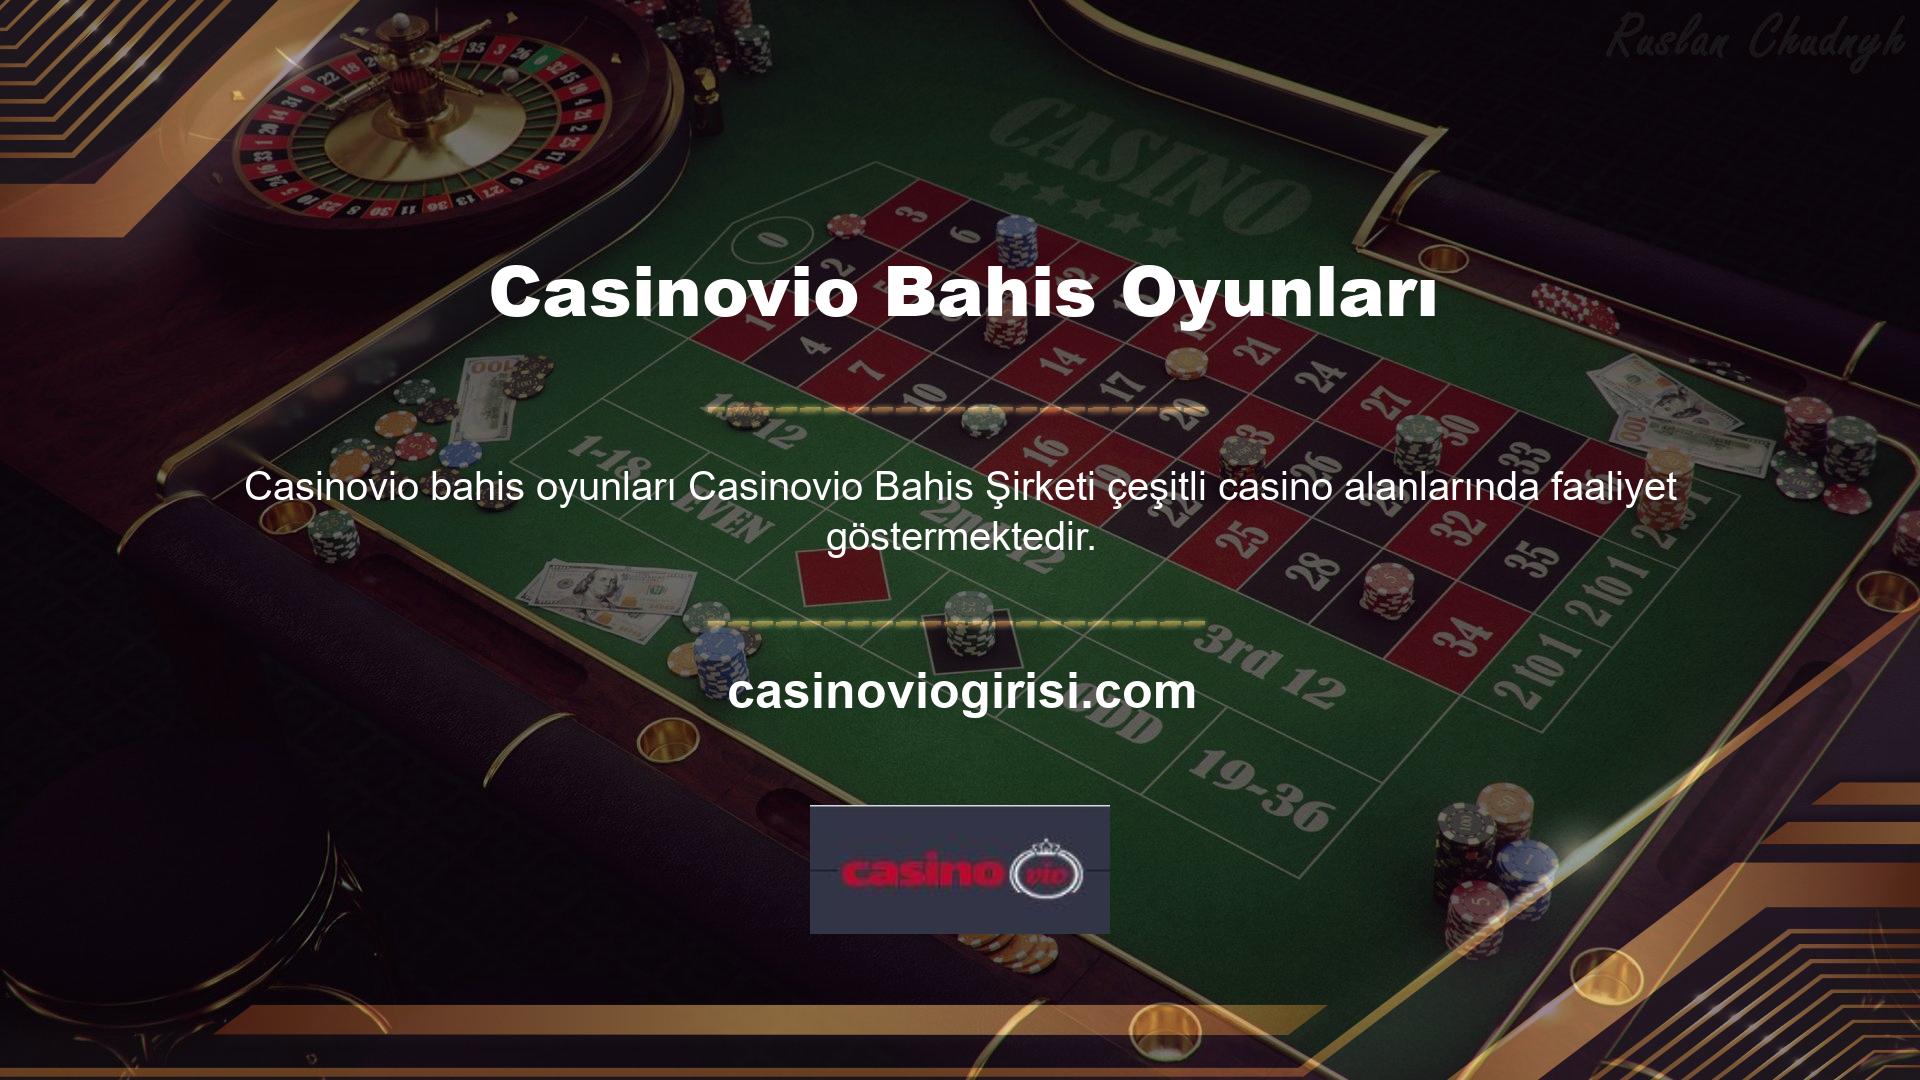 Casinovio bahis ve casino oyunları konusunda tecrübe sahibi olup sporun her alanında bahis oyunlarını kullanıcılarına sunmaktadır